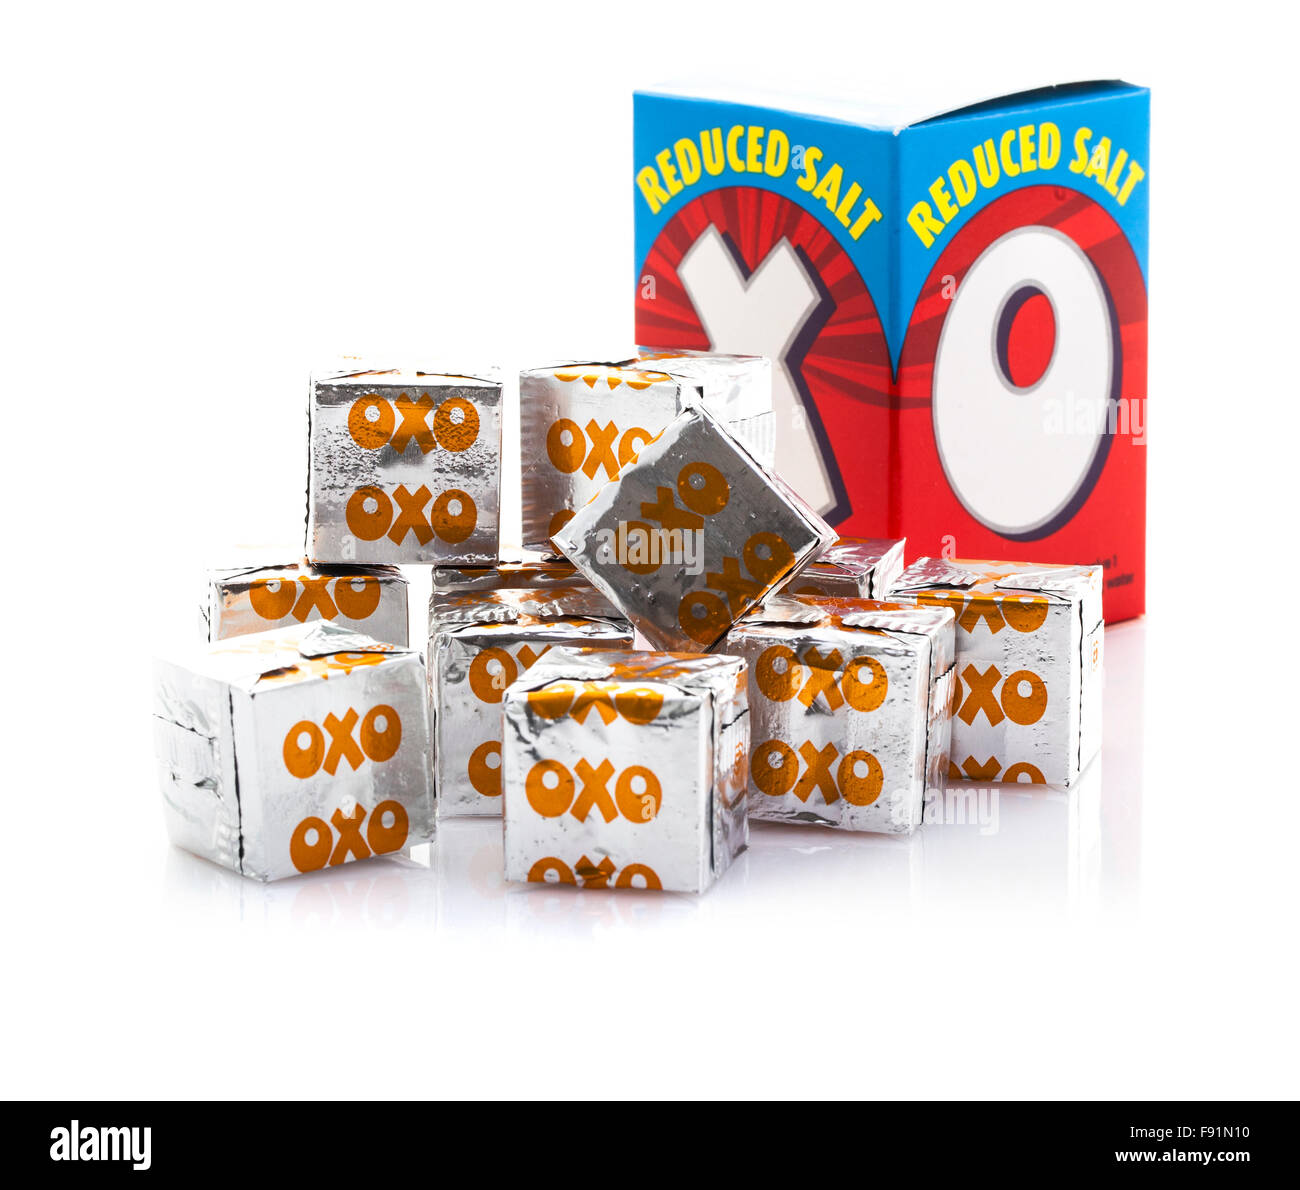 Cubetti di oxo sale ridotti immagini e fotografie stock ad alta risoluzione  - Alamy